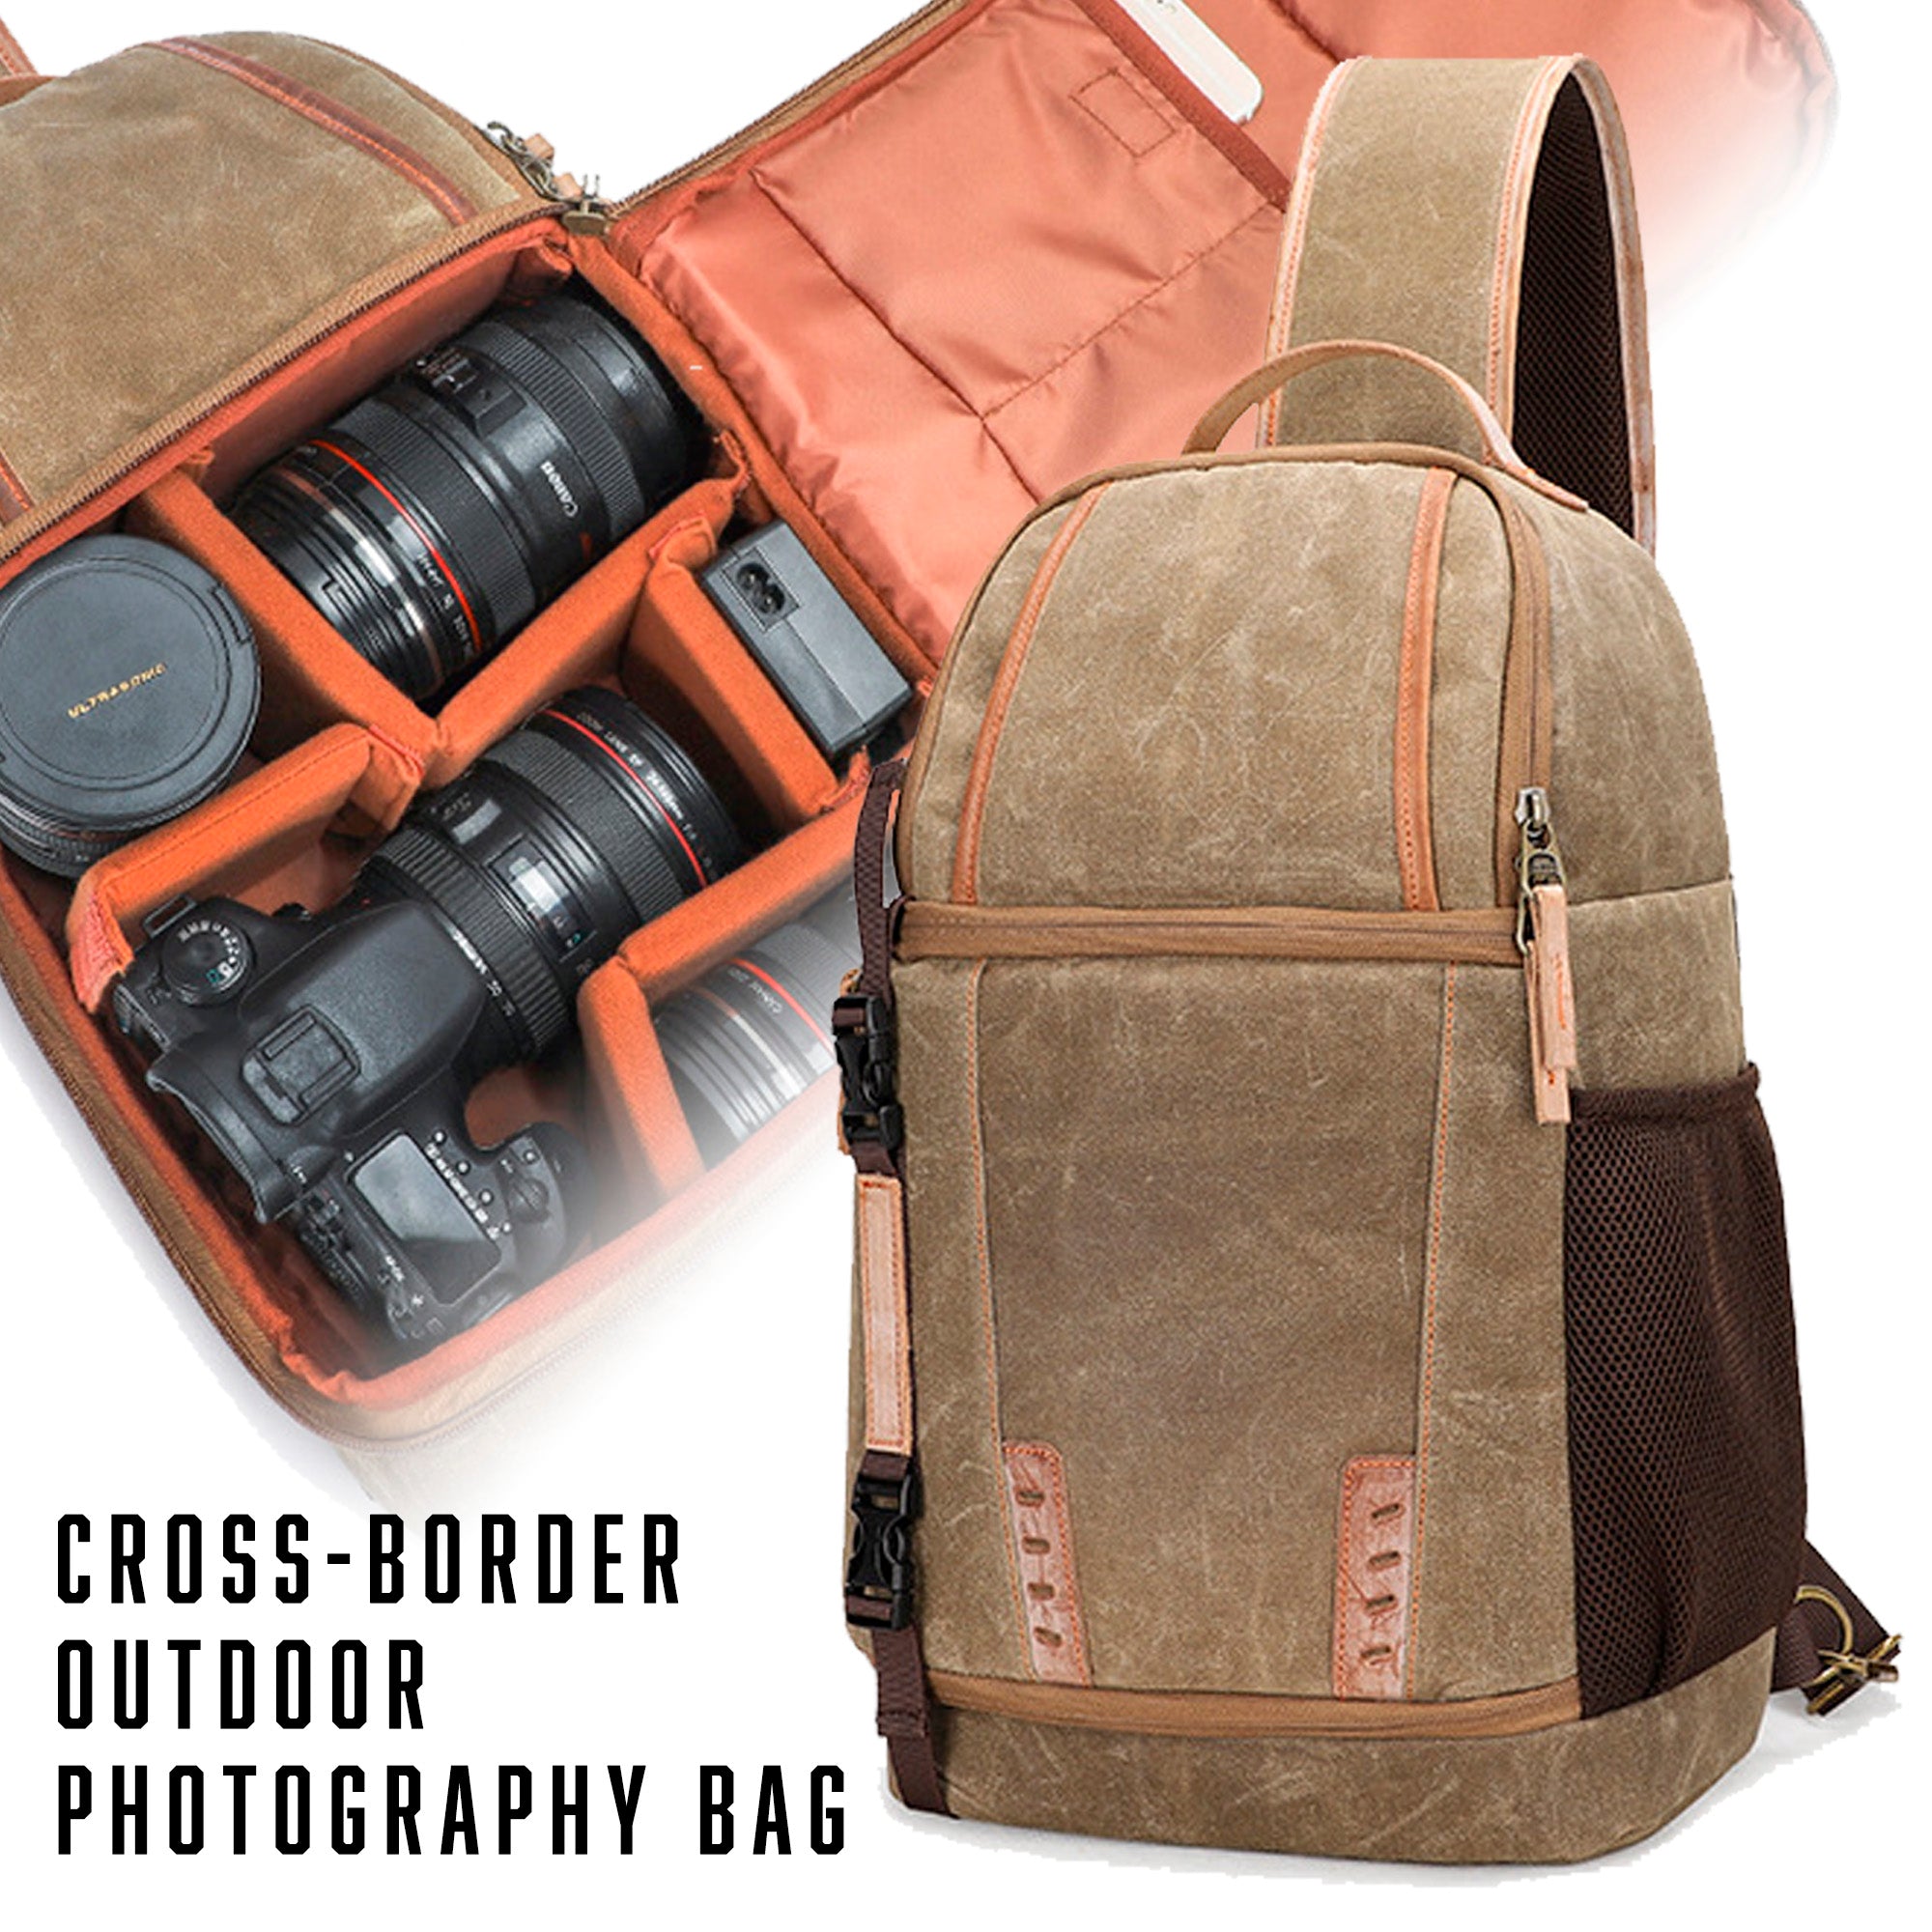 Cross-border outdoor photography bag